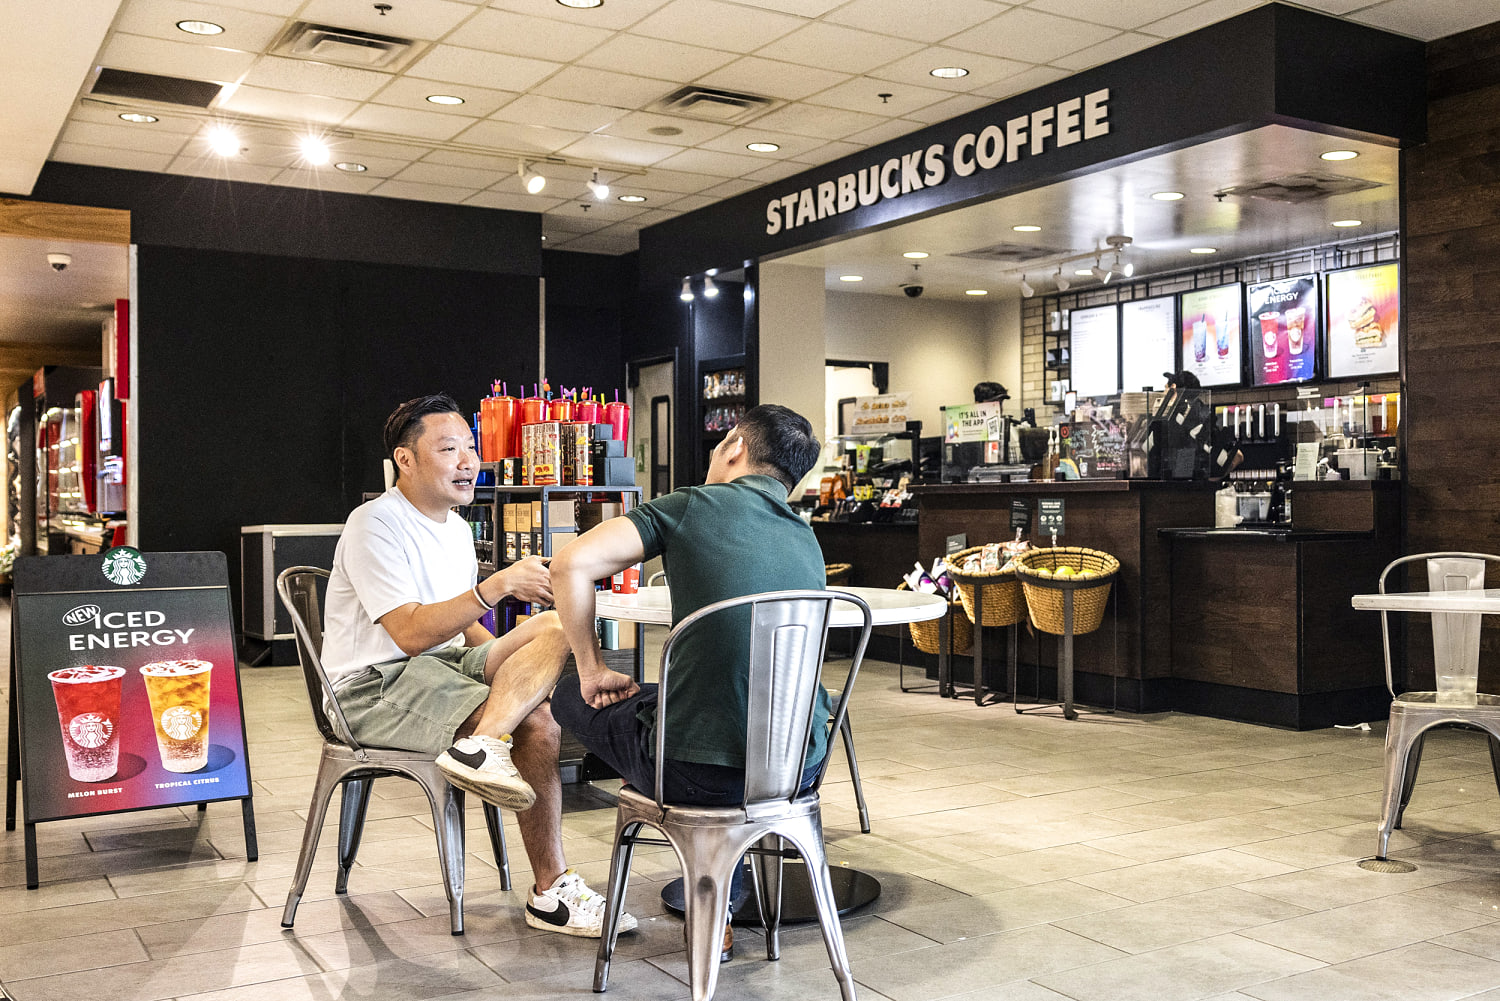 Starbucks is reeling as customers go elsewhere, sales decline